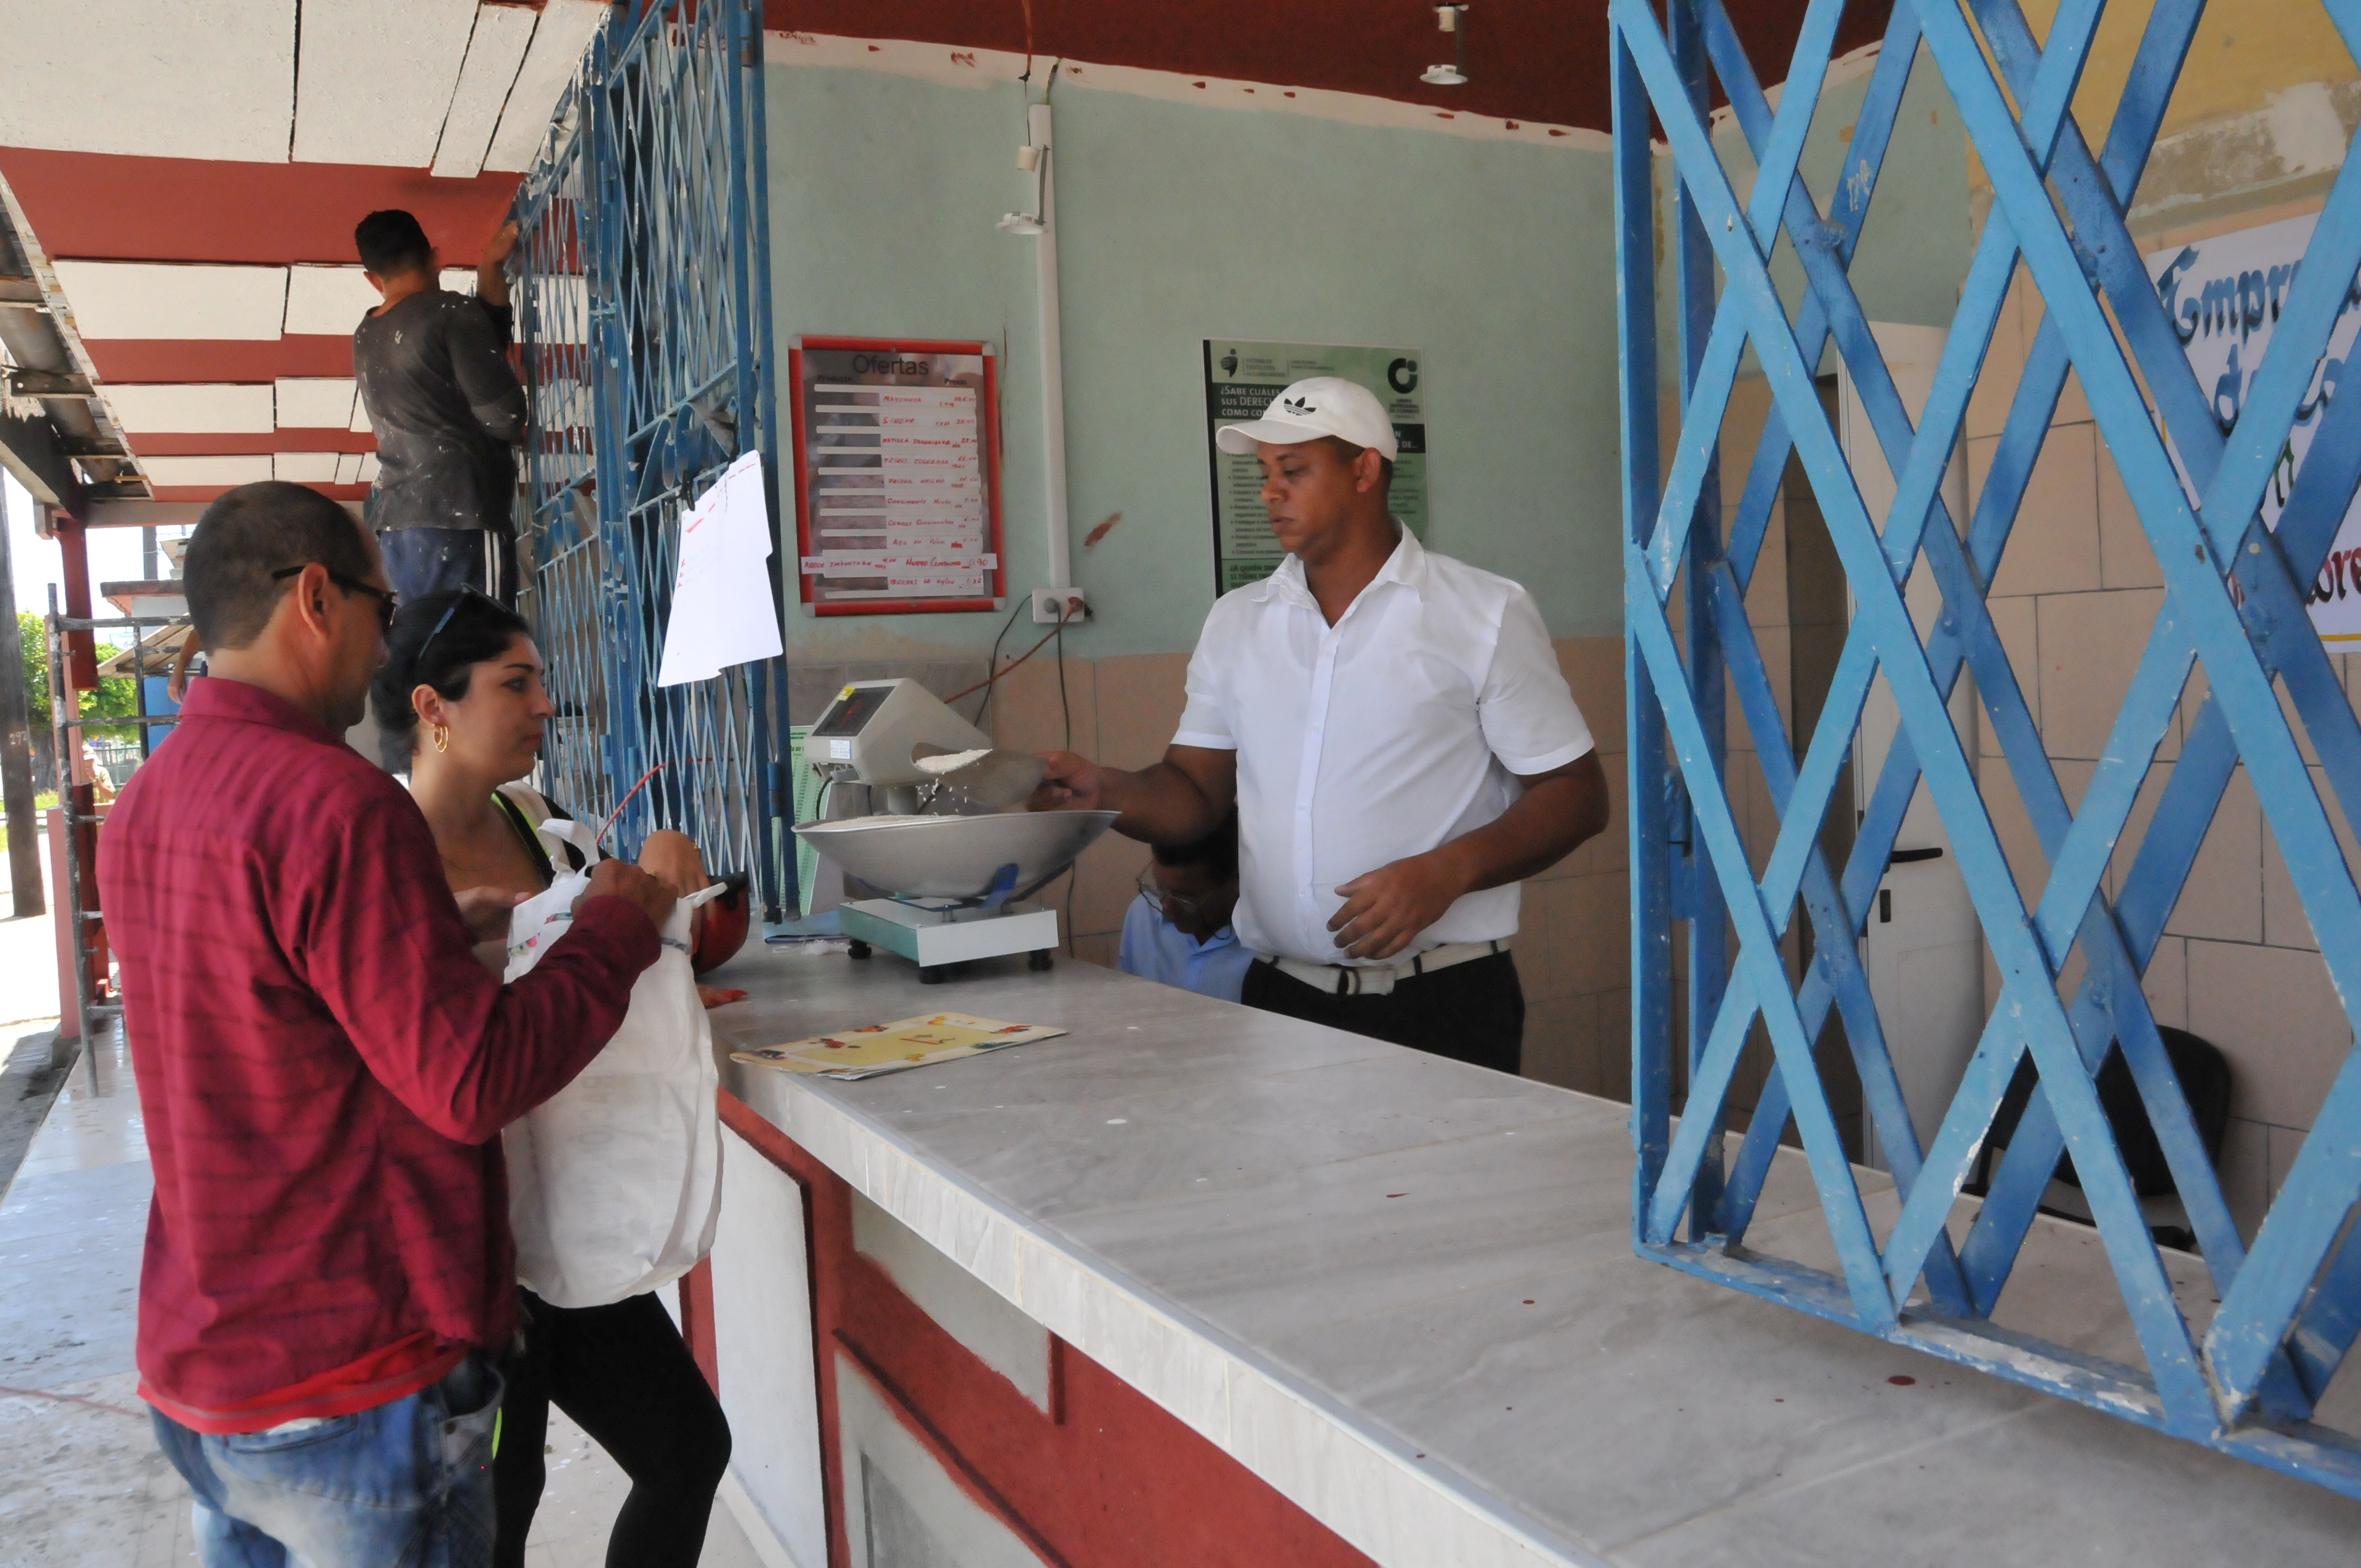 El punto de venta para los trabajadores por cuenta propia se encuentra ubicada en Calzada y Holguín, en la ciudad de Cienfuegos./Foto: Juan Carlos Dorado